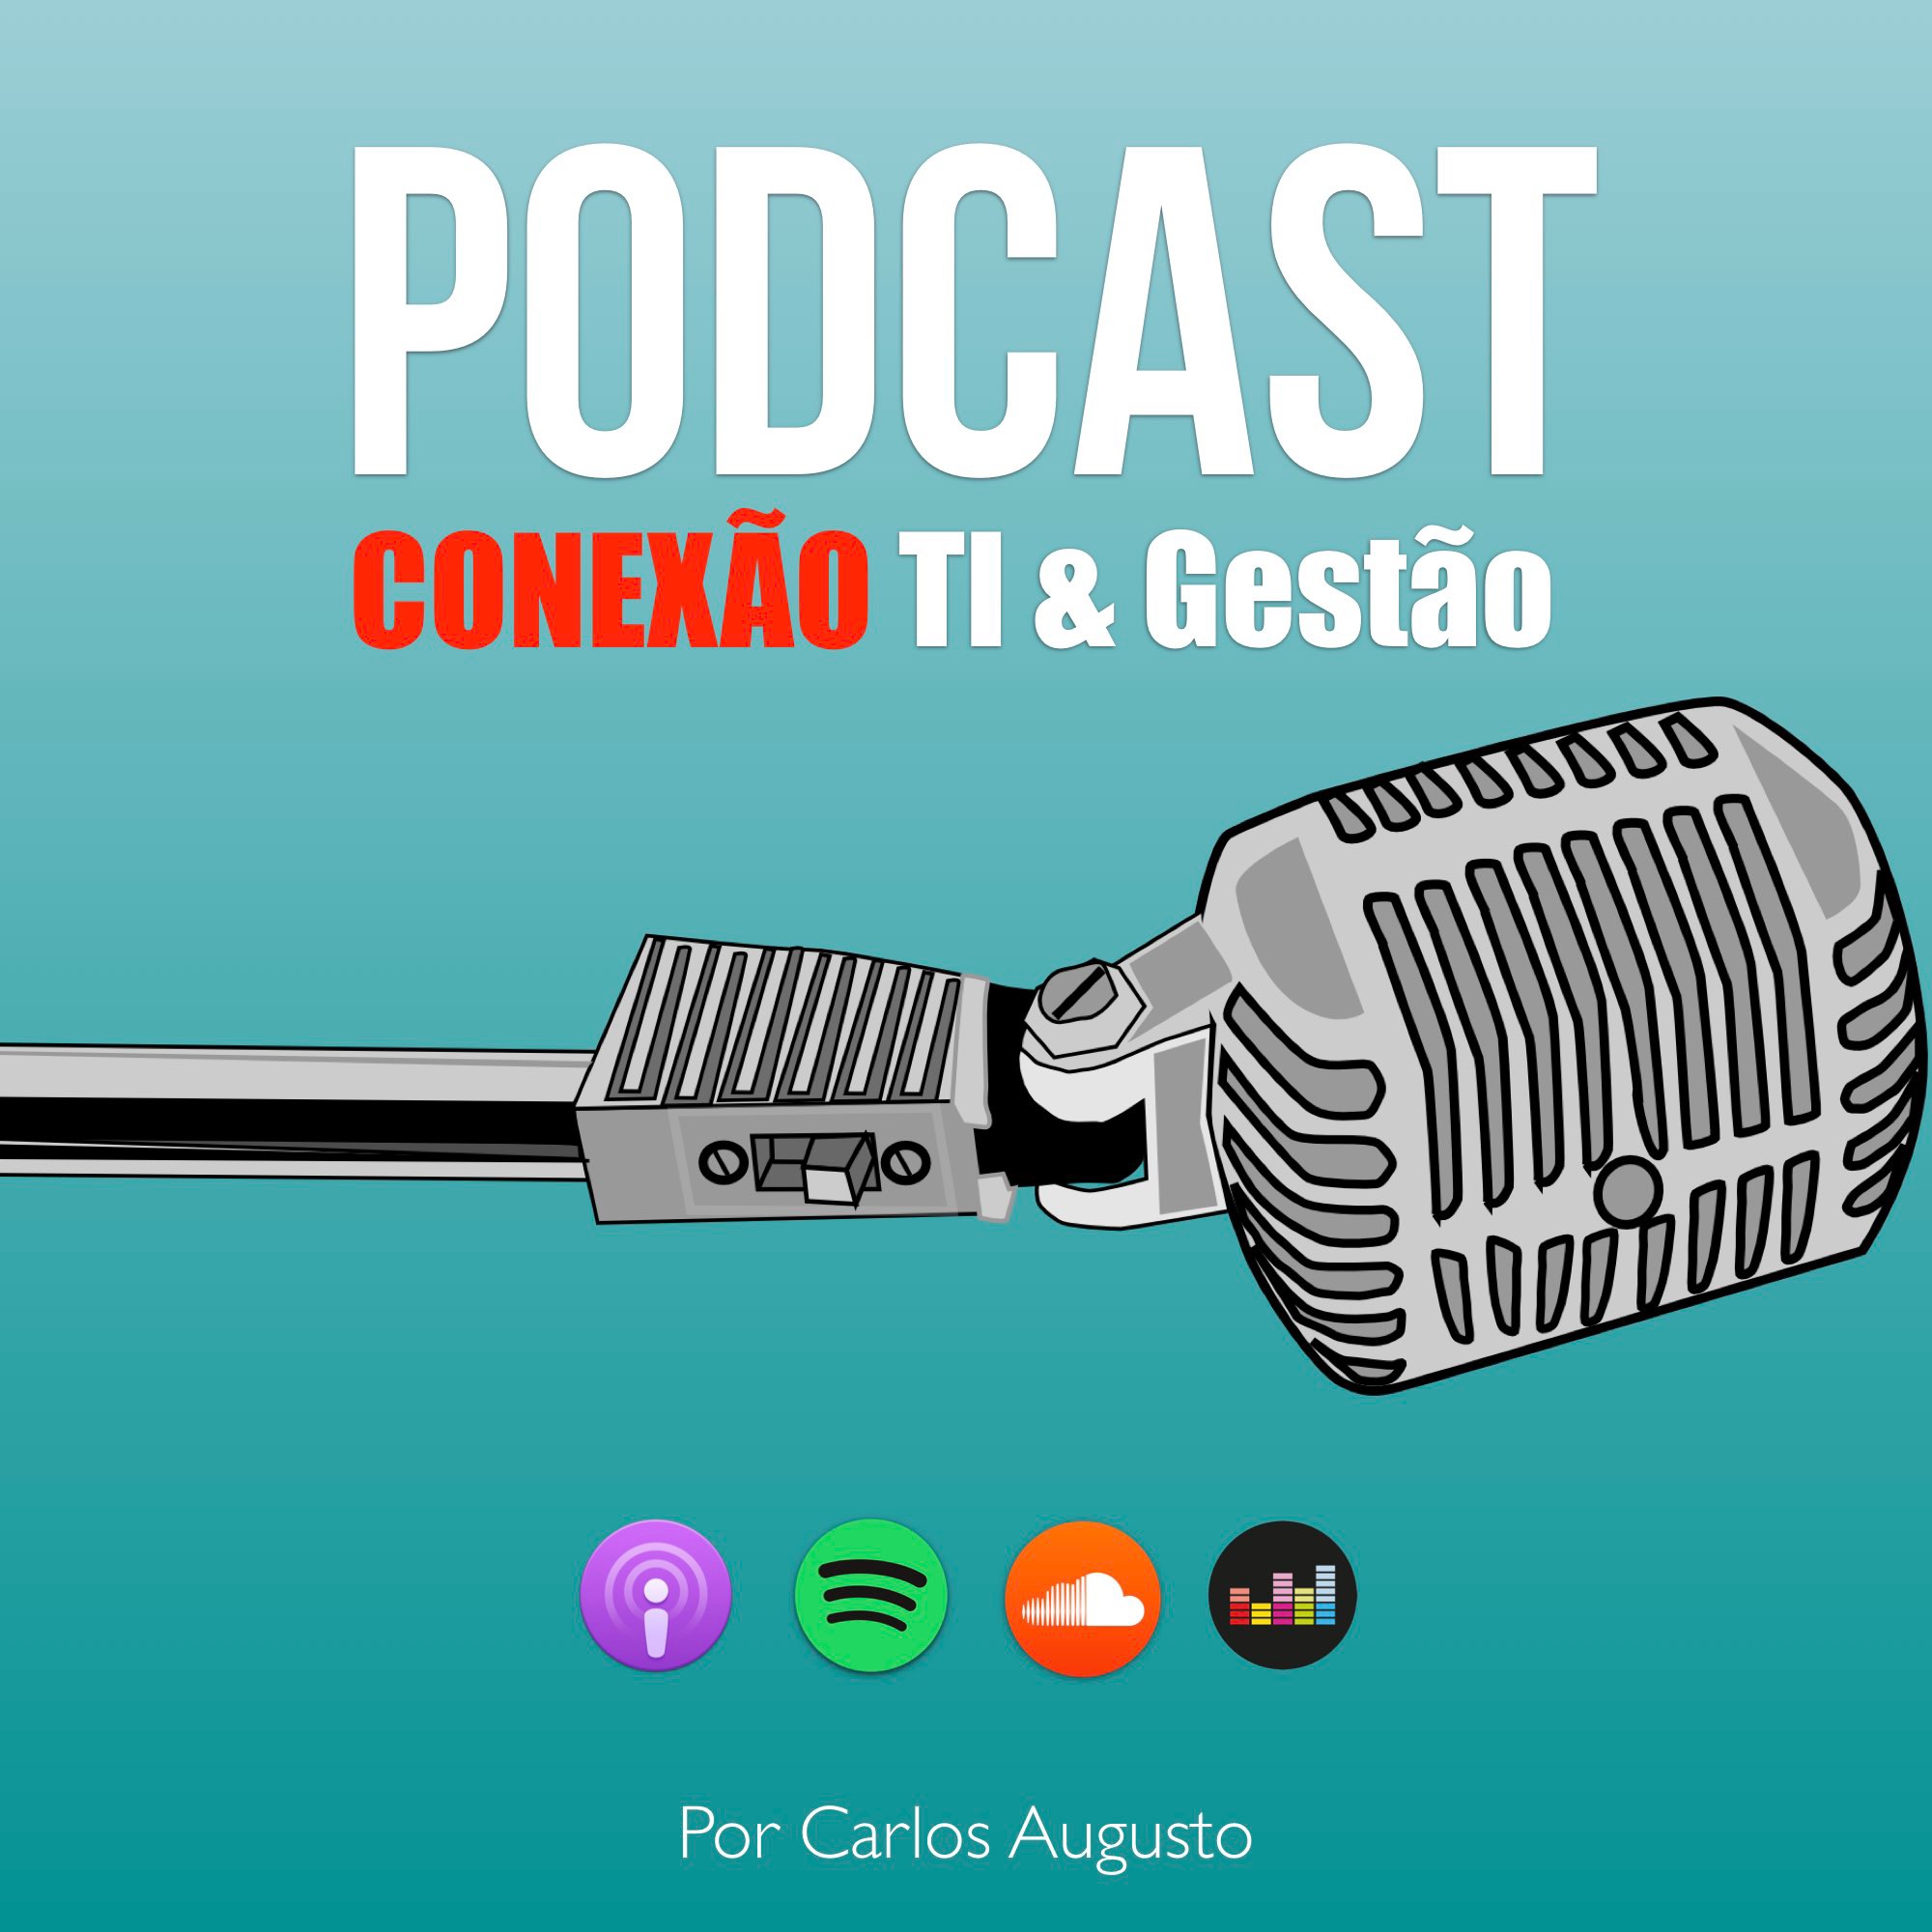 Podcast Conexão TI e Gestão